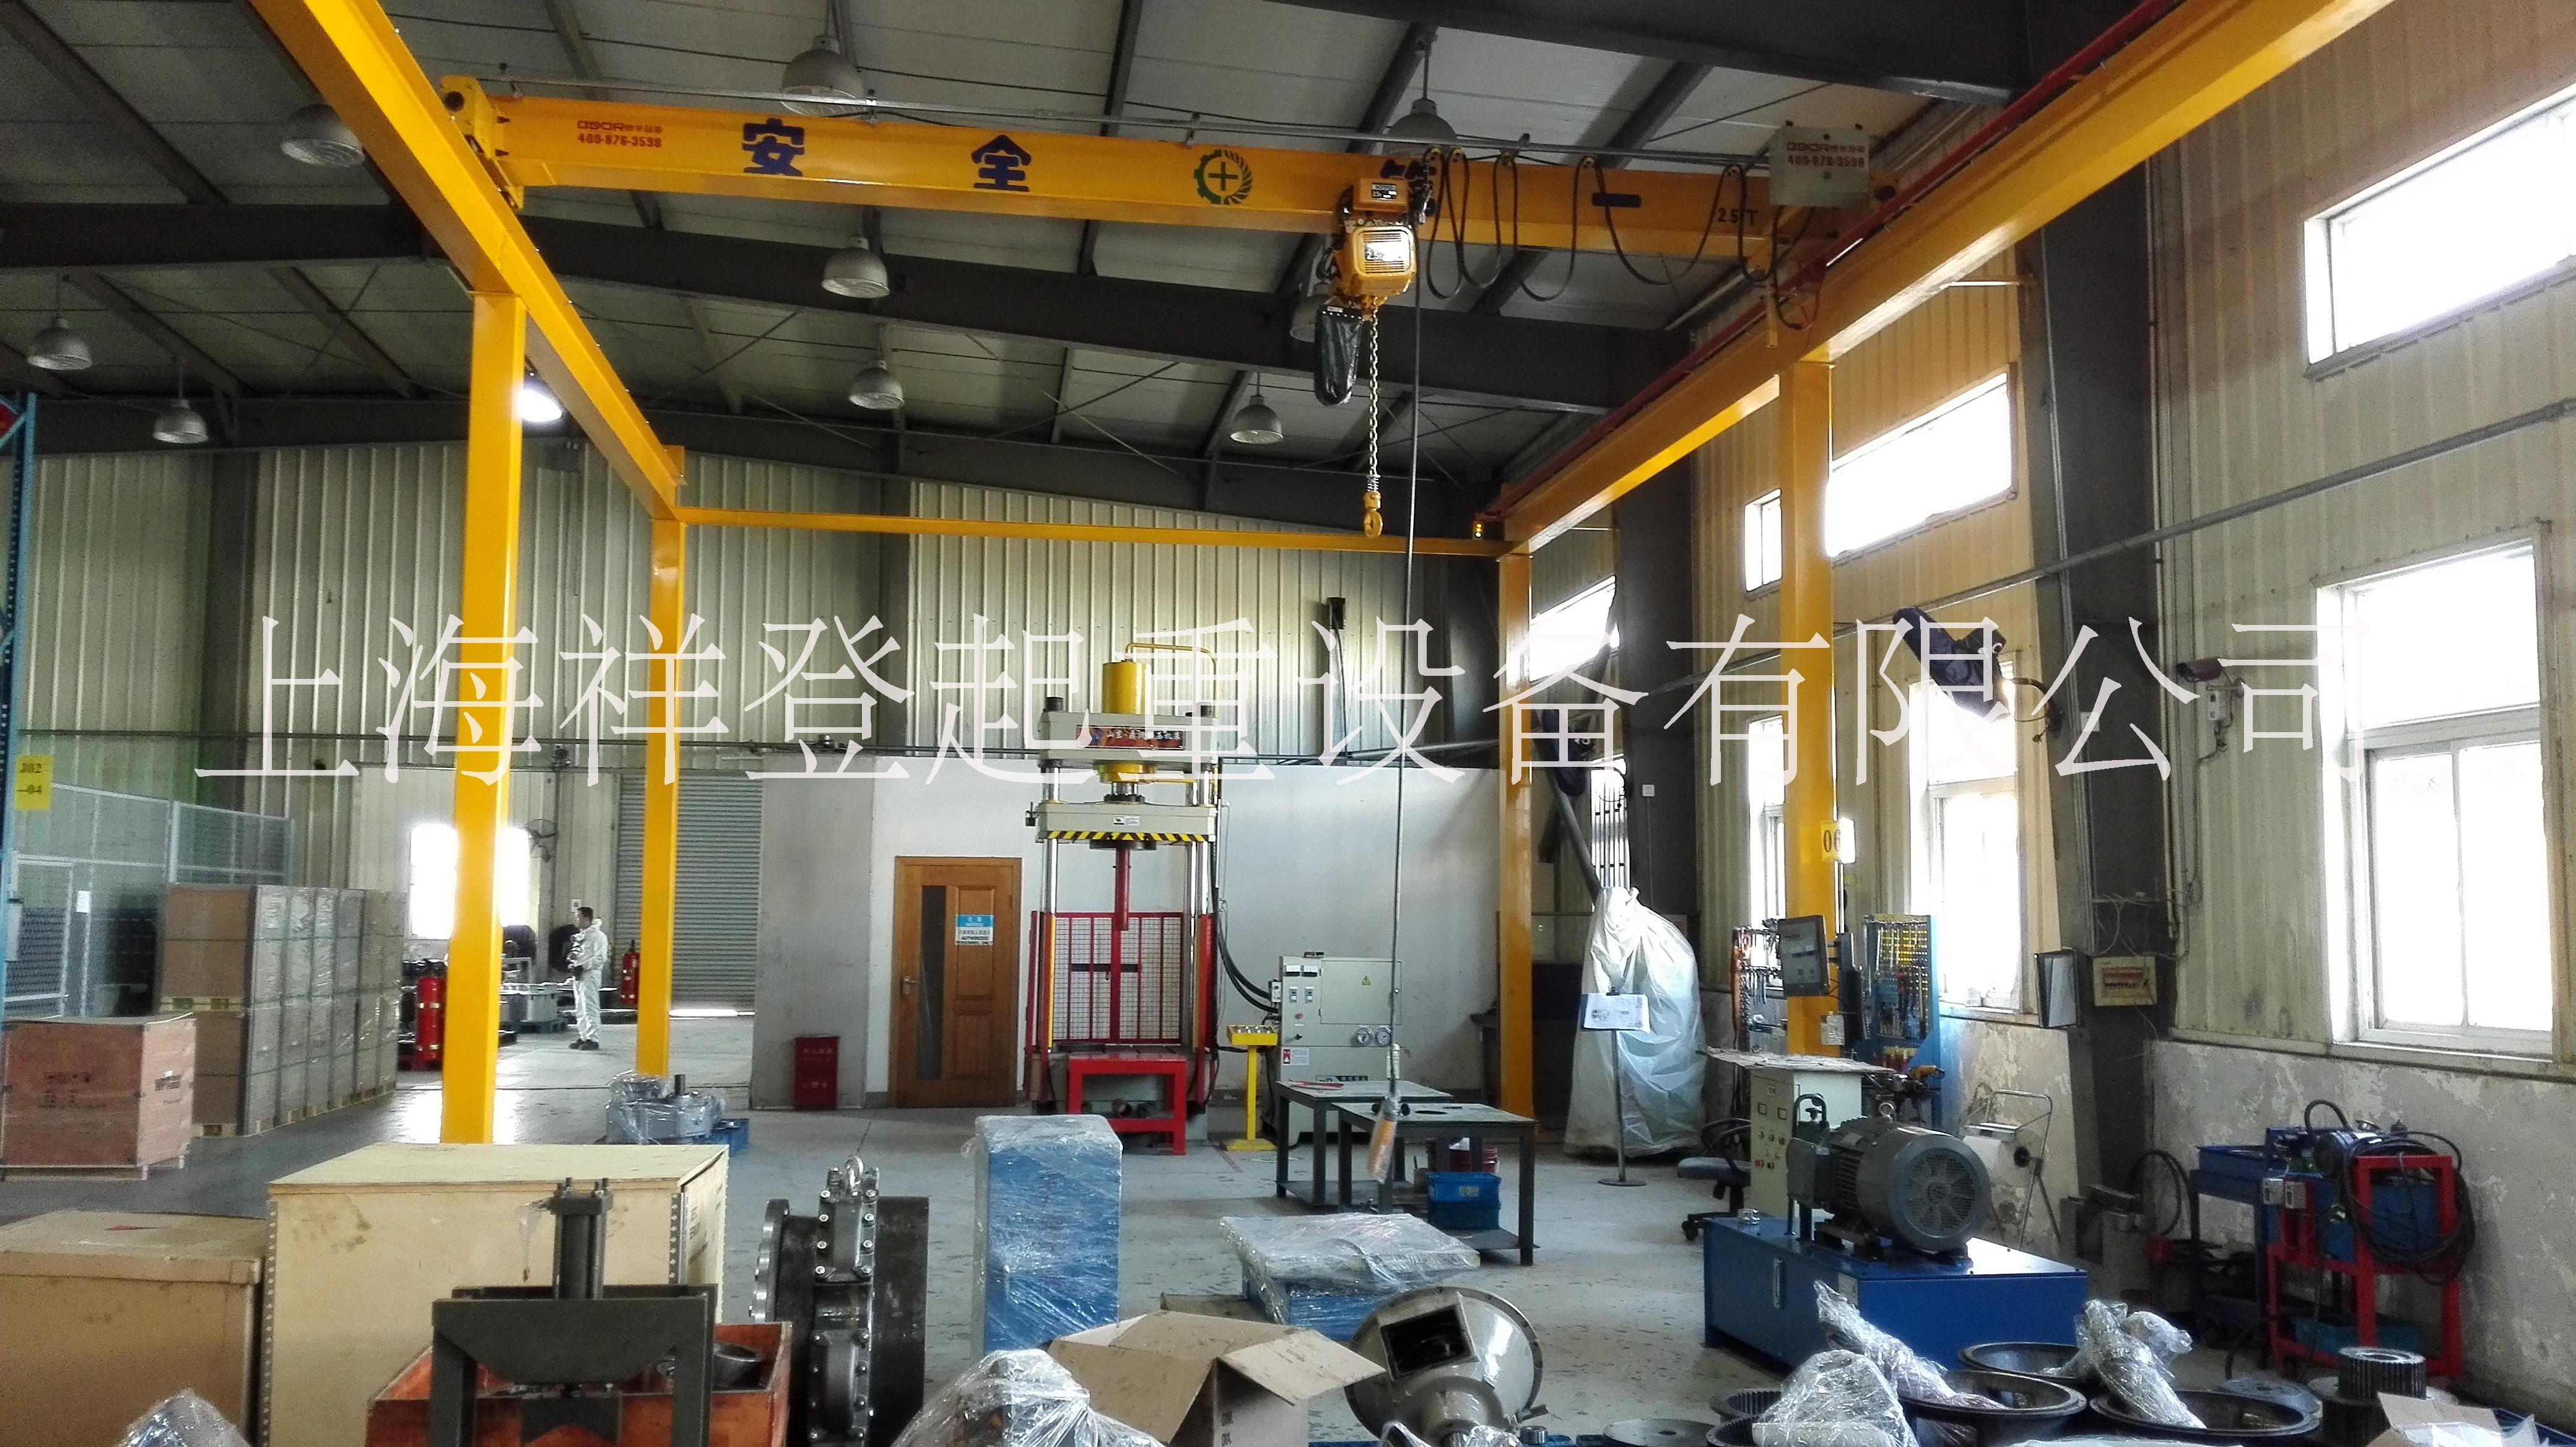 维修保养起重机，上海维保厂家图片